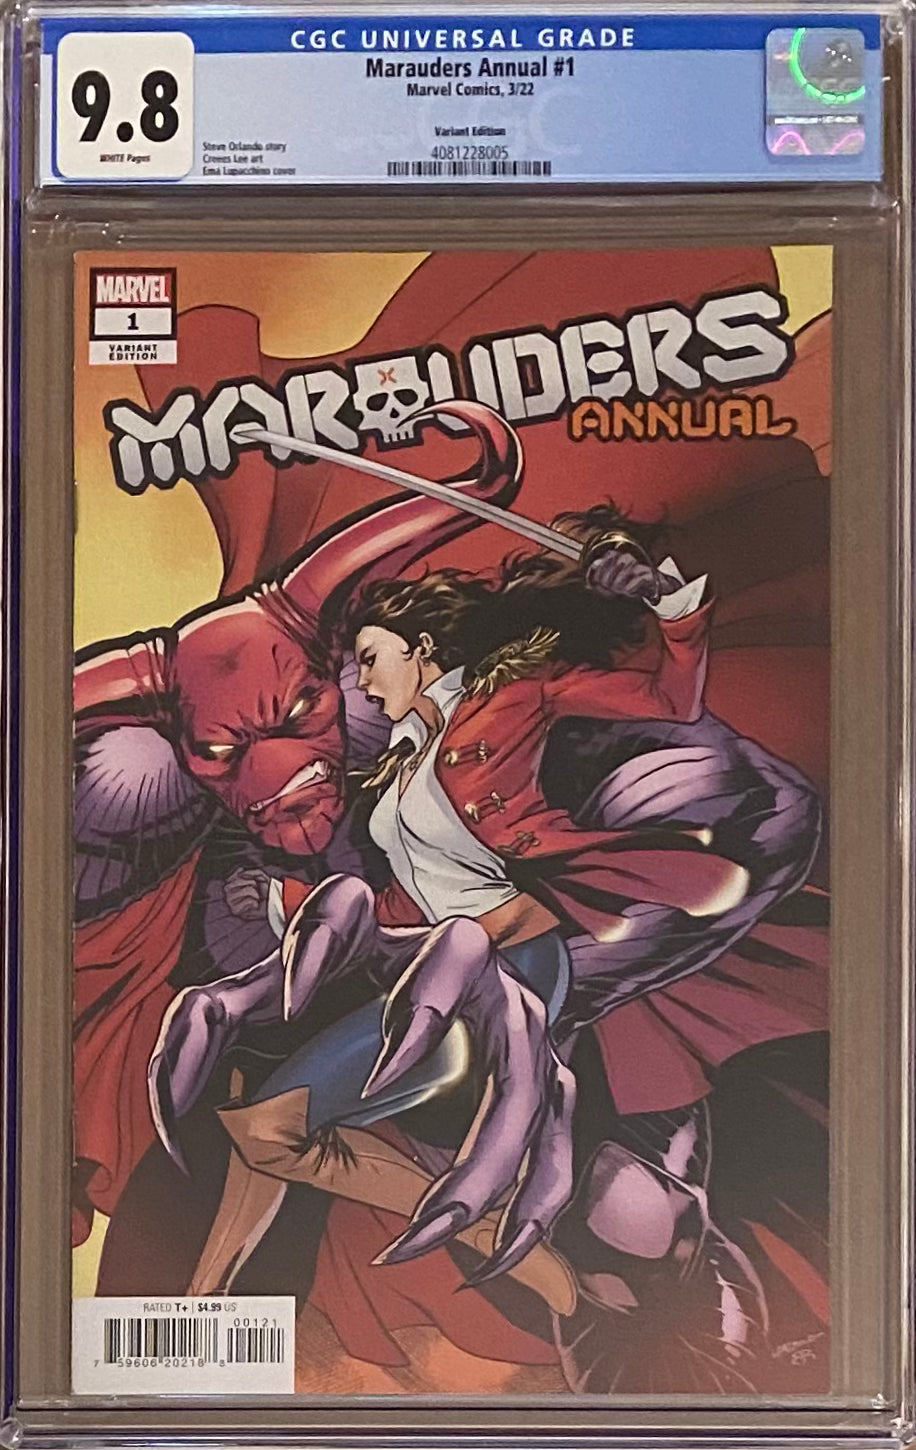 Marauders Annual #1 Variant CGC 9.8